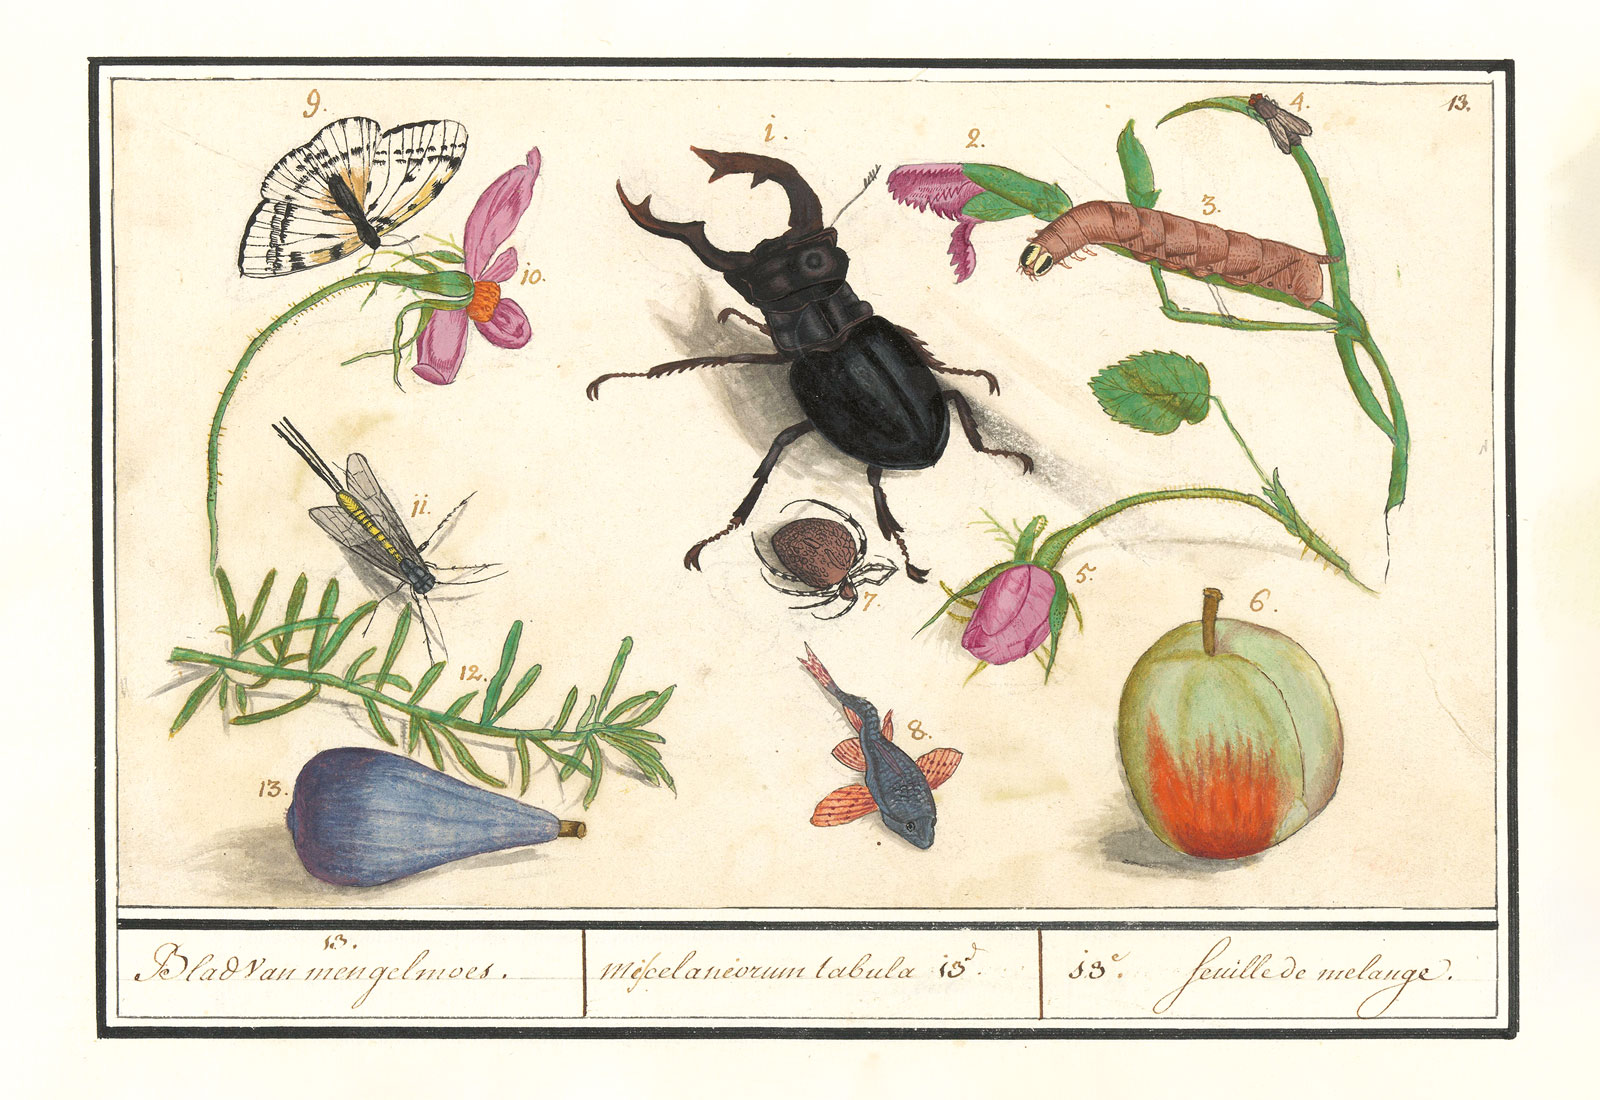 *Lámina miscelánea no. 13*, en Elias Verhulst, *Conjunto de Historia Natural*, 1596-1610. Rijksmuseum 